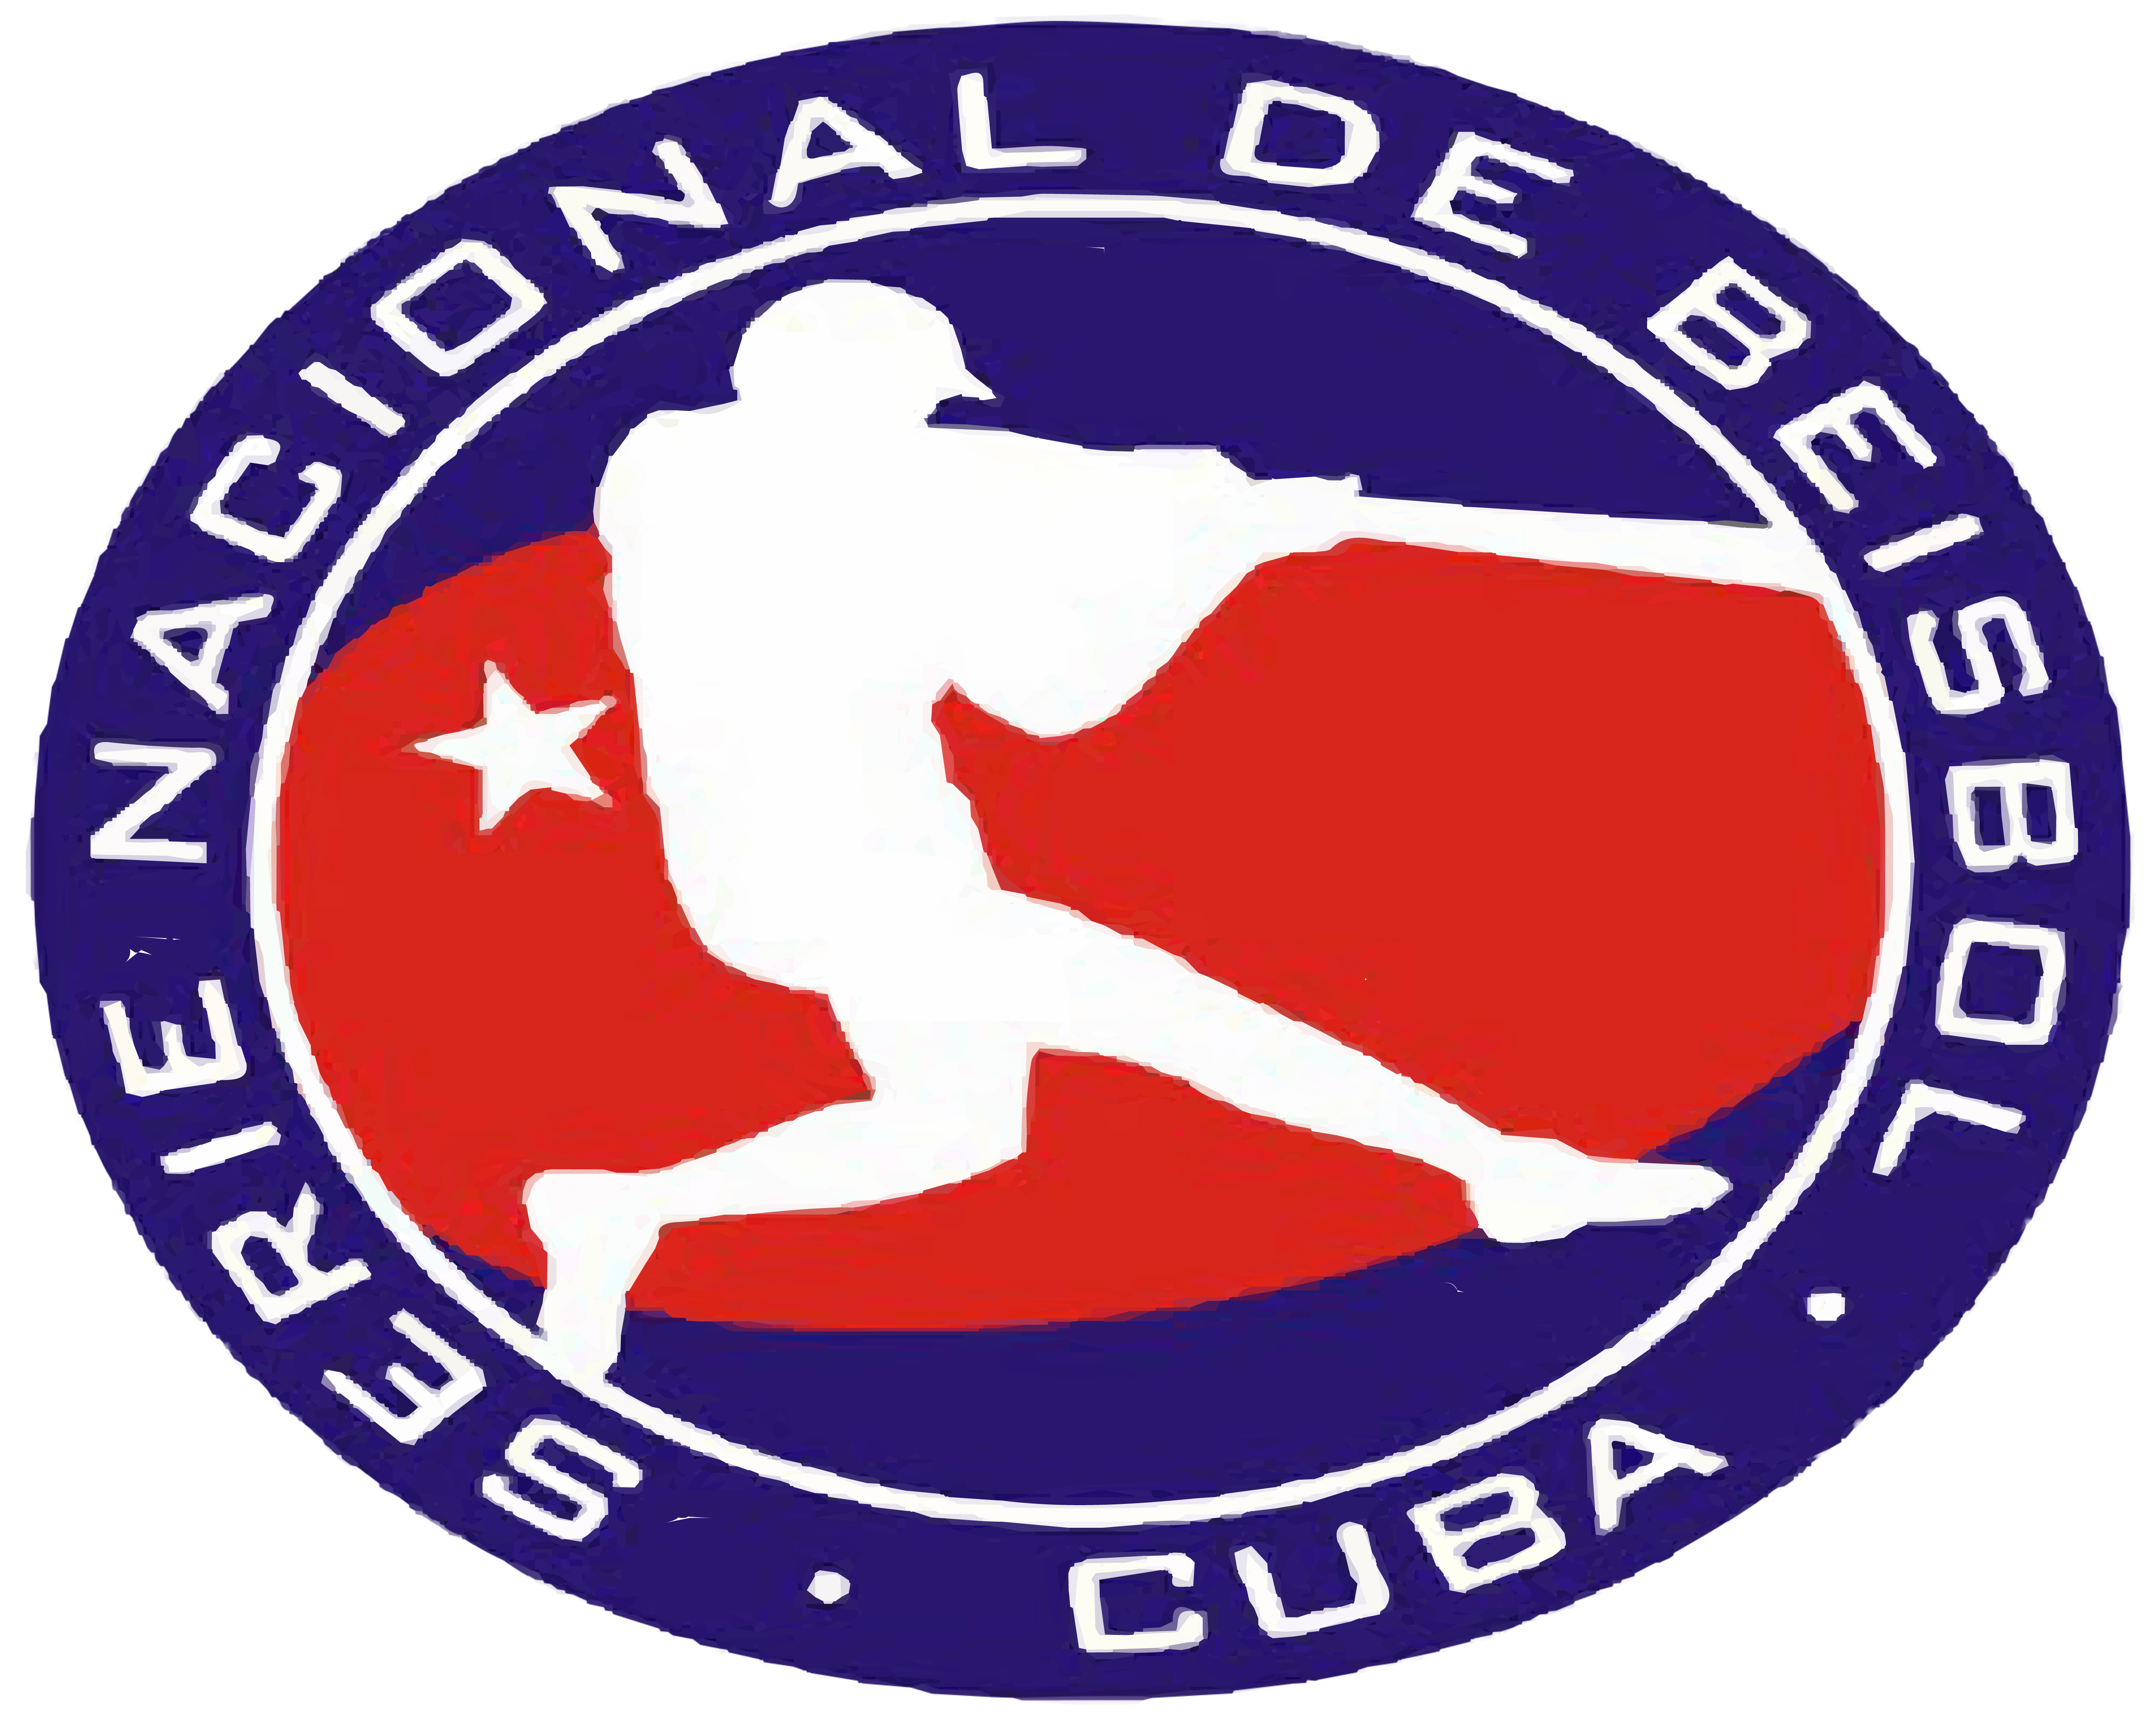 61st Cuban National Series Final - Cuba Dugout